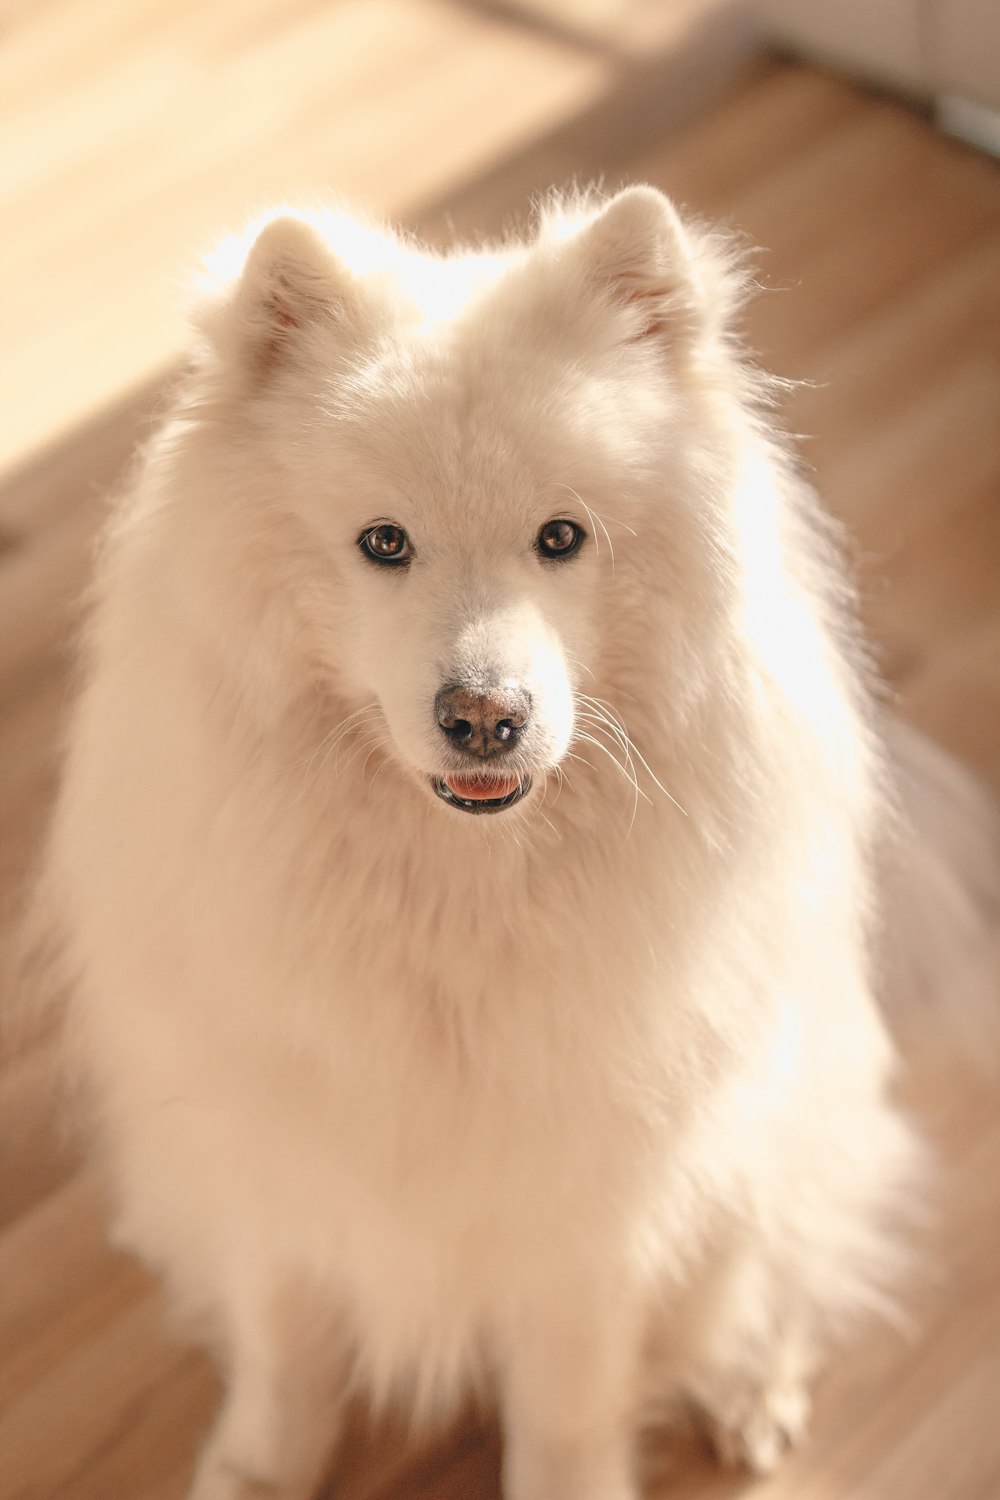 white long coated dog with blue eyes